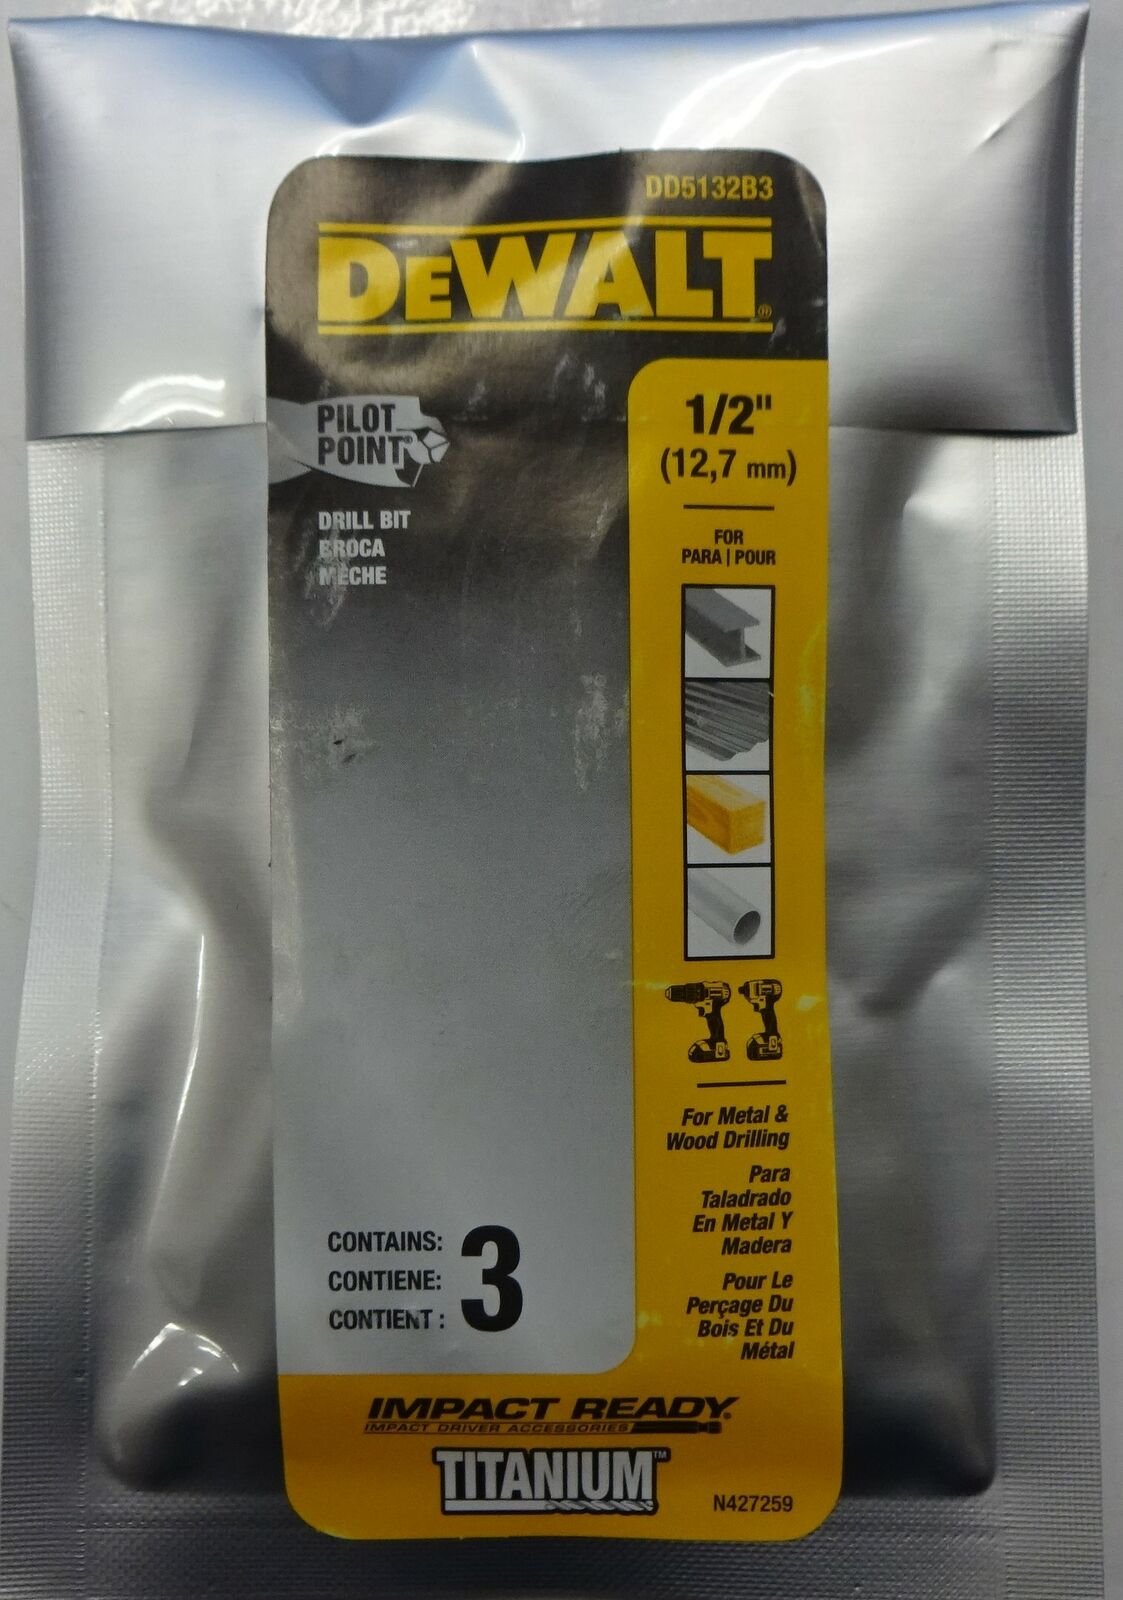 Dewalt DD5132B3 1/2" Titanium Hex-Shank Drill Bits Impact-Ready Pilot Point 3-pk